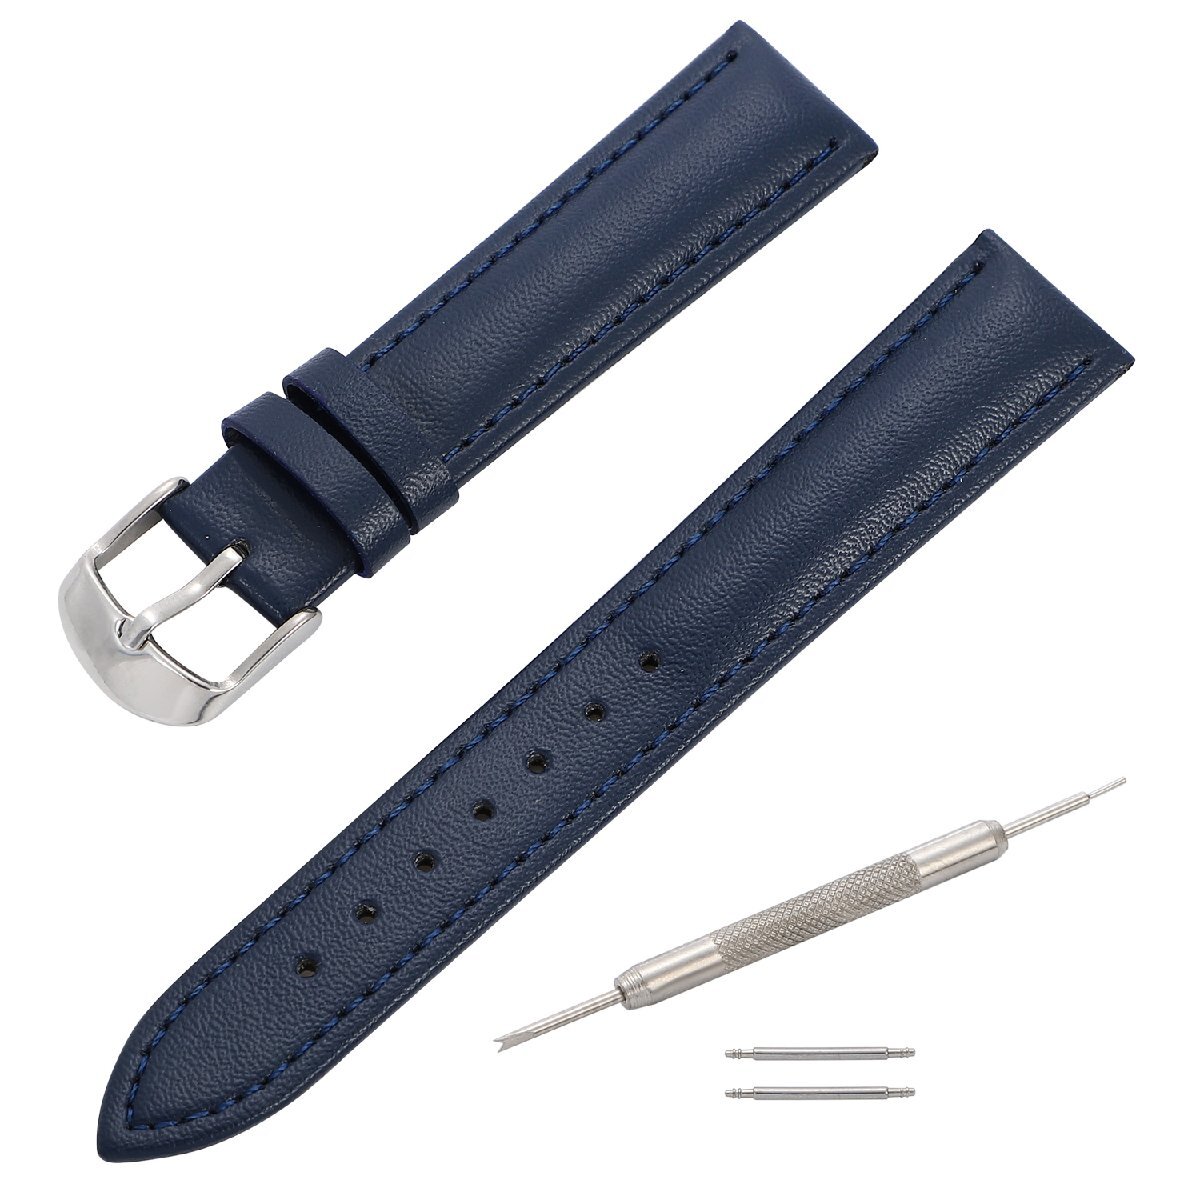  наручные часы ремень темно-синий голубой 20mm замена инструмент & spring палка есть телячья кожа мужской женский 